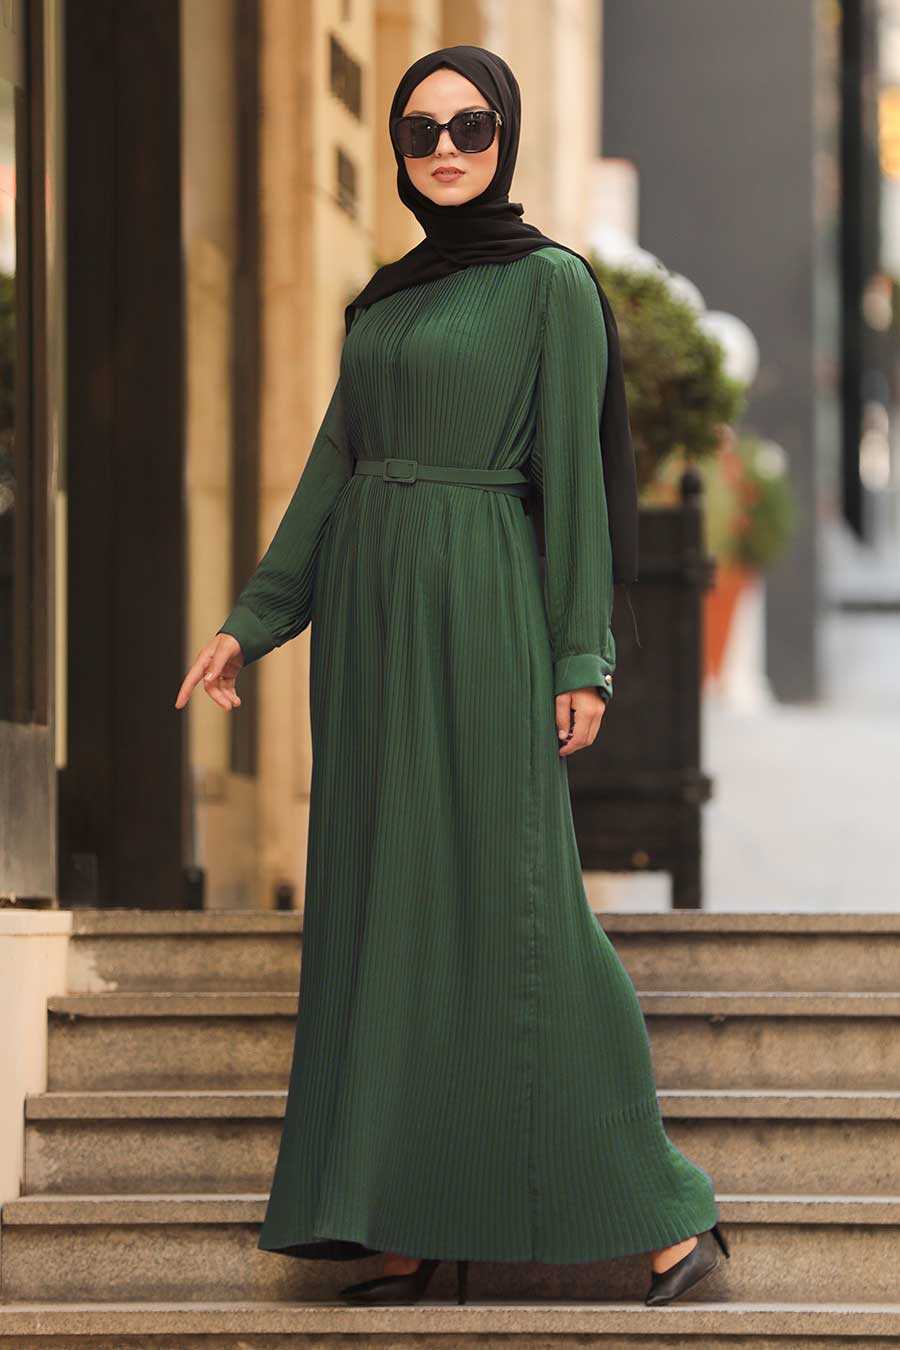 Khaki Hijab Dress 3337HK - Neva-style.com